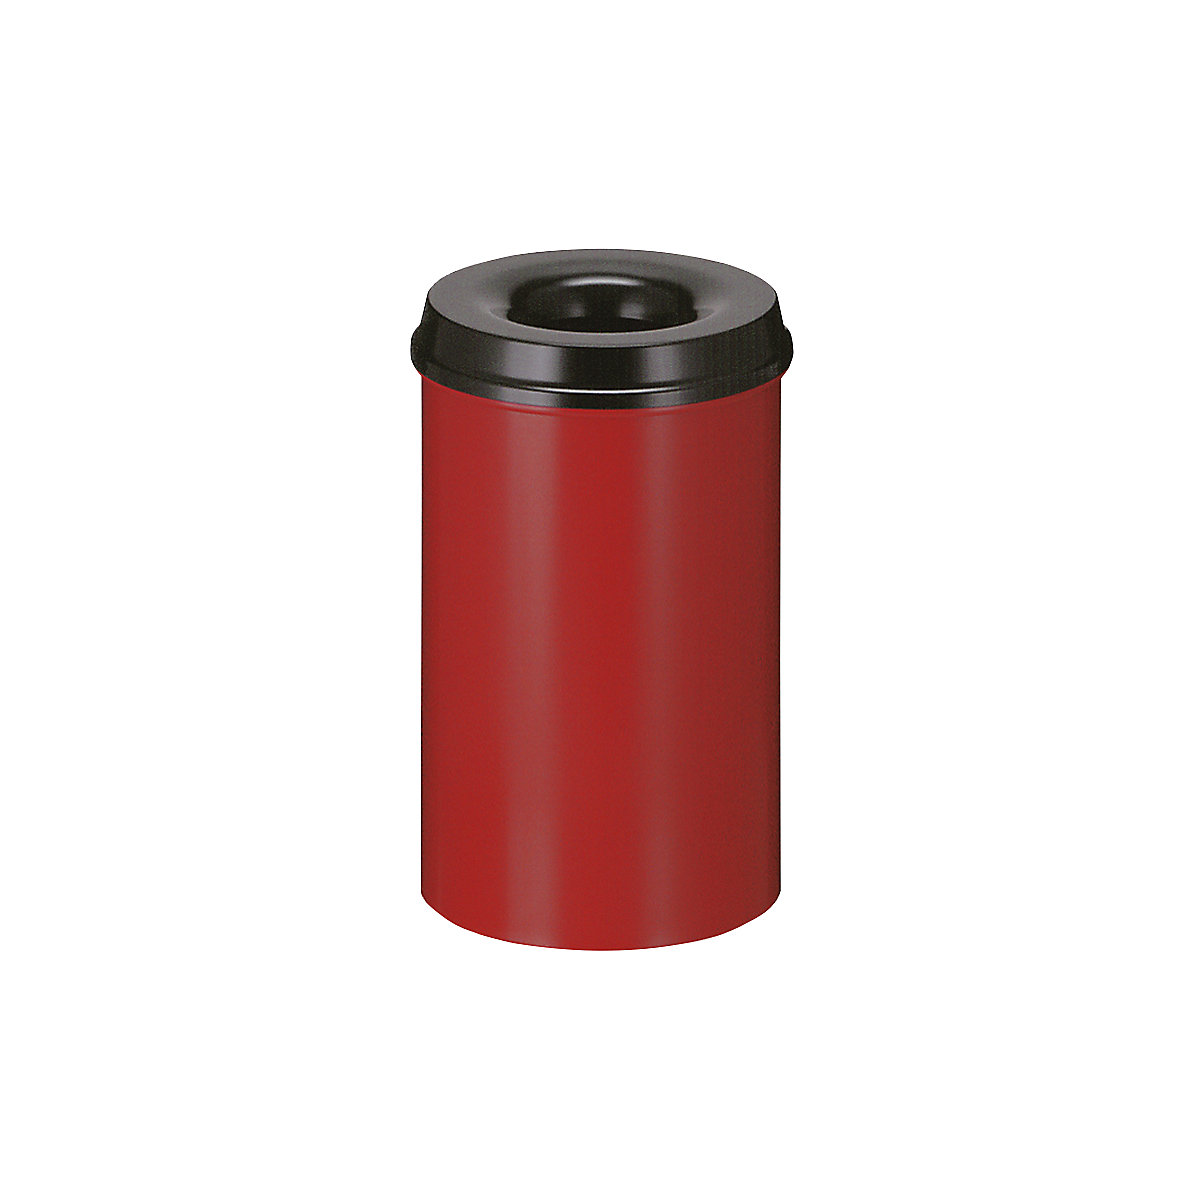 Varnostni koš za papir, jeklo, samodejno gašenje, prostornina 20 l, VxØ 426 x 260 mm, korpus rdeč / gasilna glava črna-8